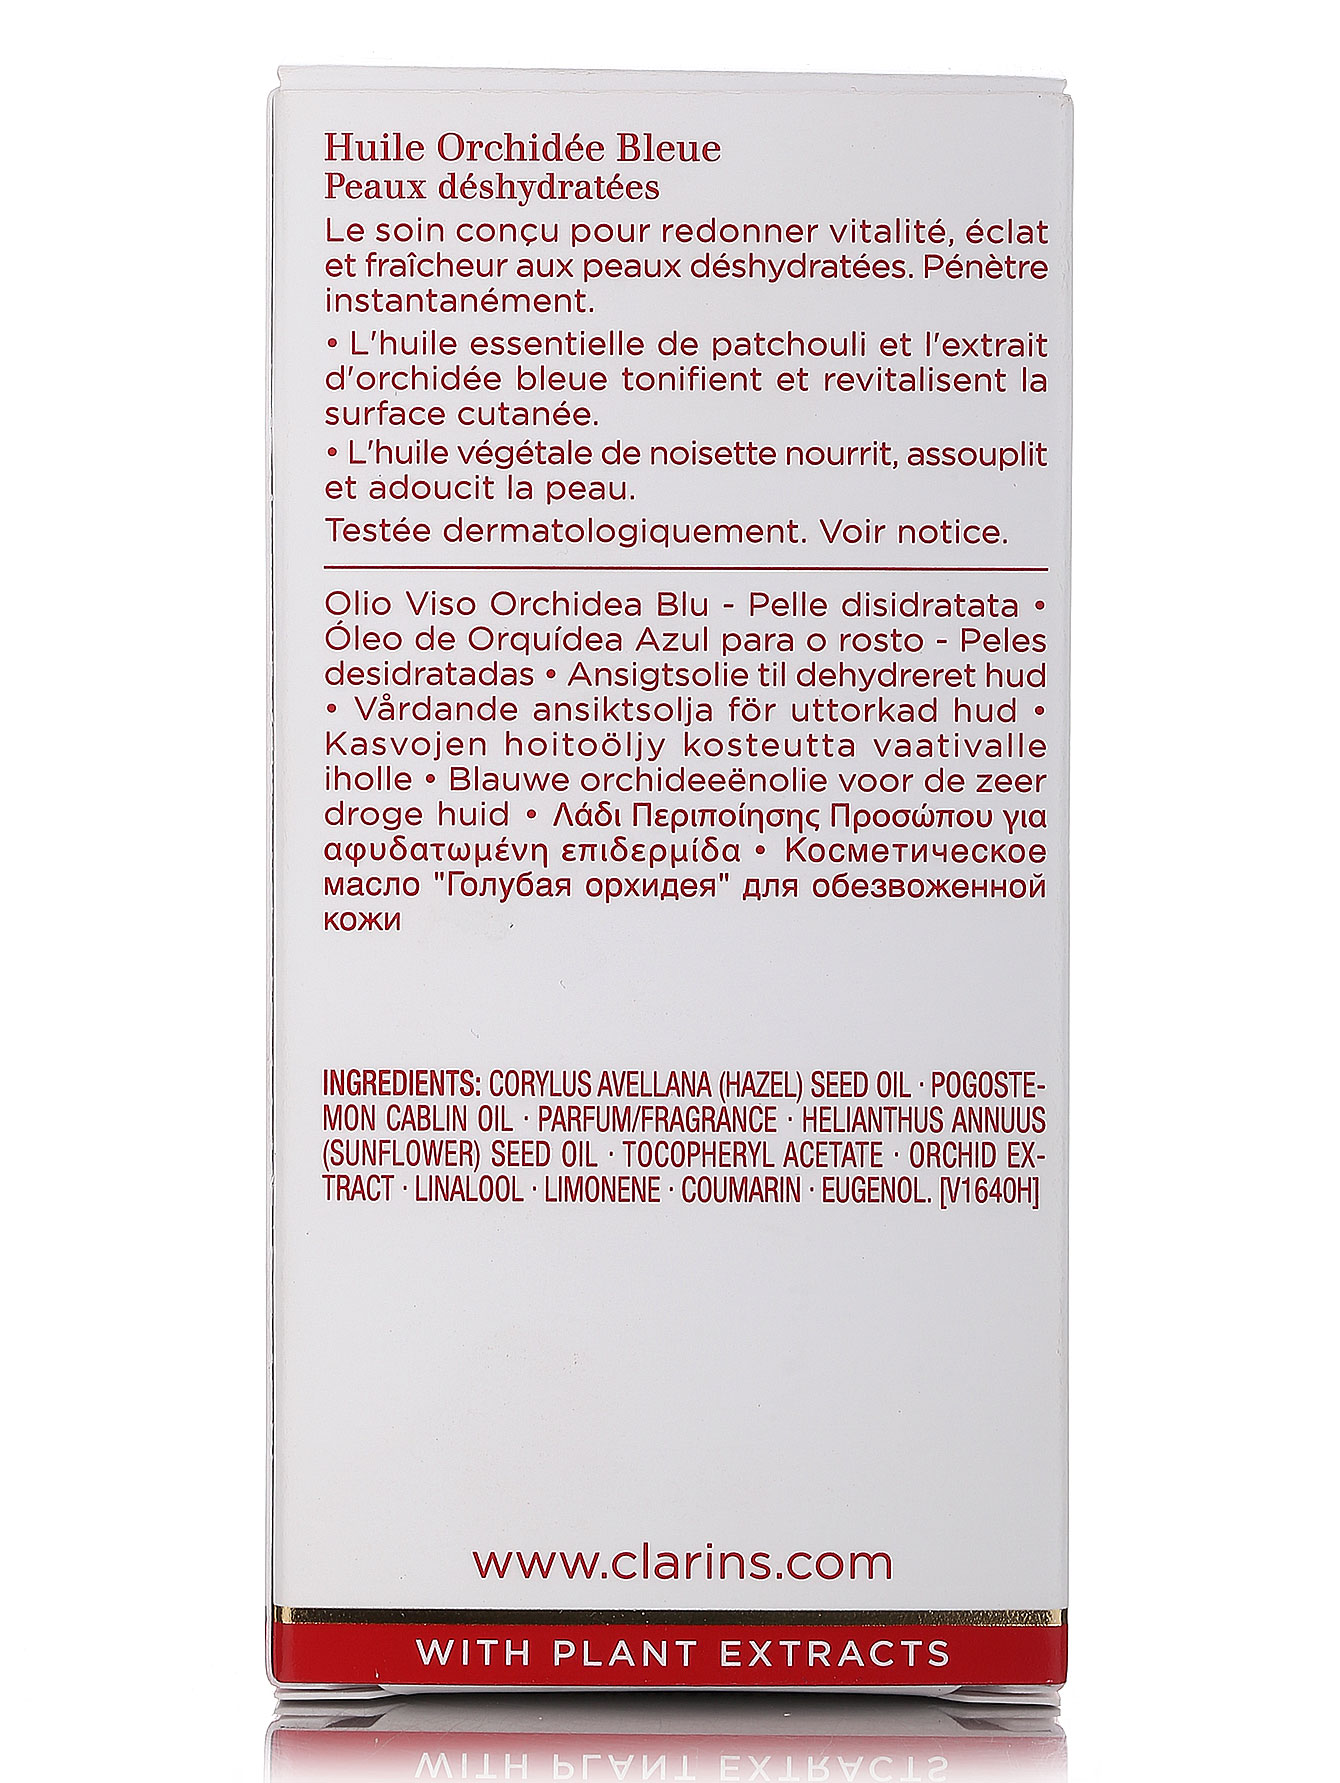  Косметическое масло для обезвоженной кожи - Face Care, 30ml - Модель Верх-Низ